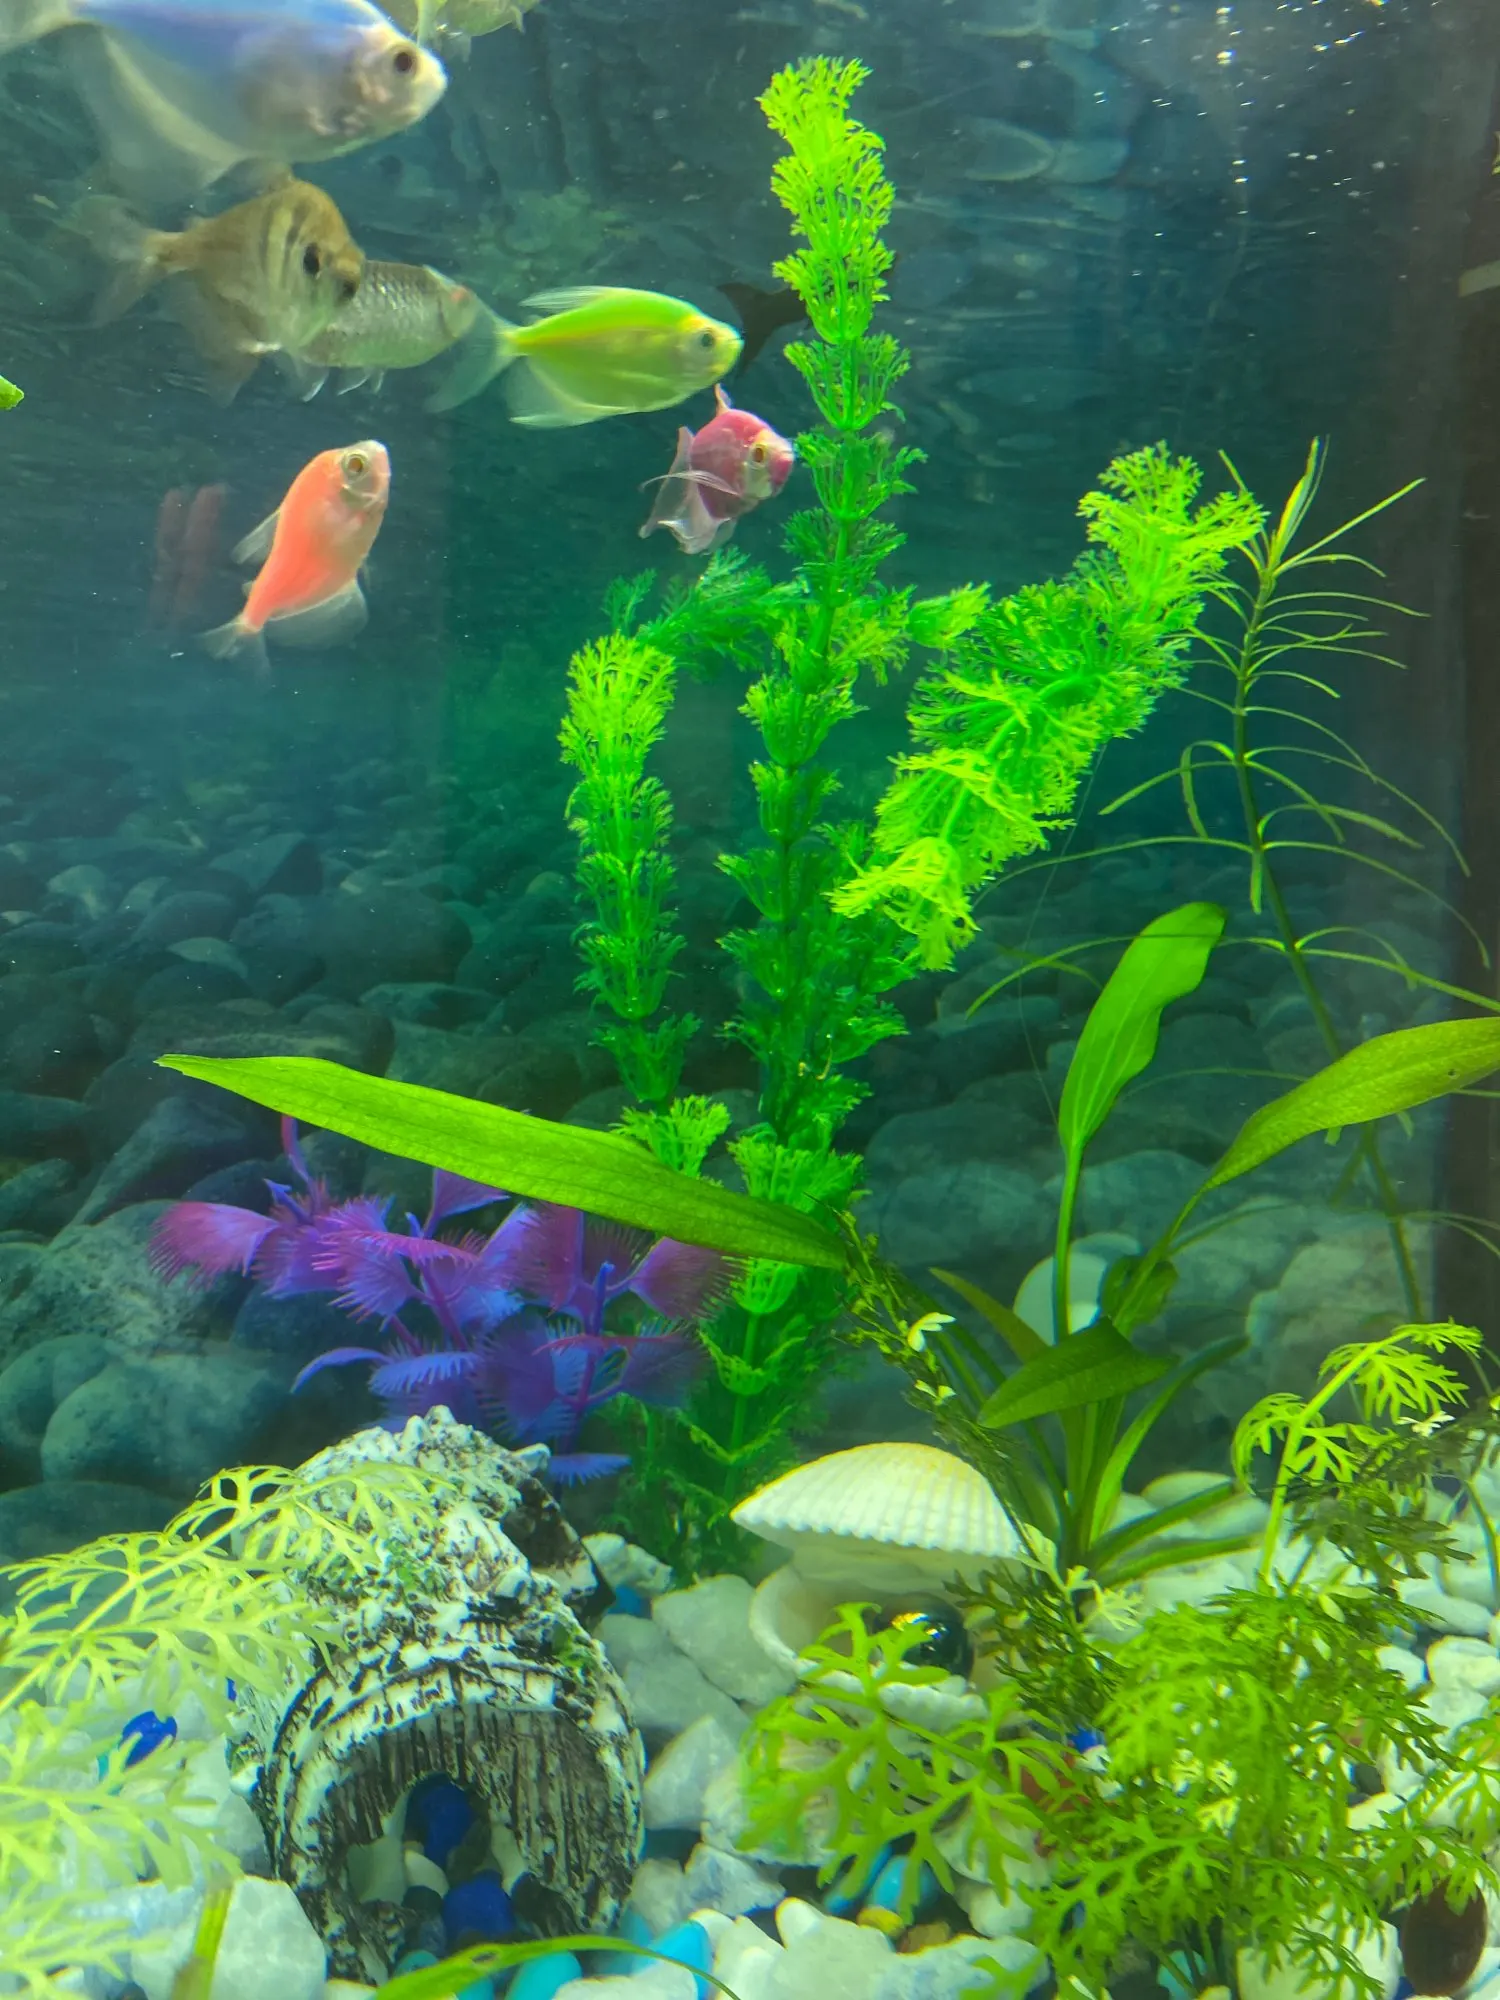 Fish Aquarium Decorations Home Artificial Simulation Plants Fish Tank Aquarium Lovely Decoration Aquarium Accessories